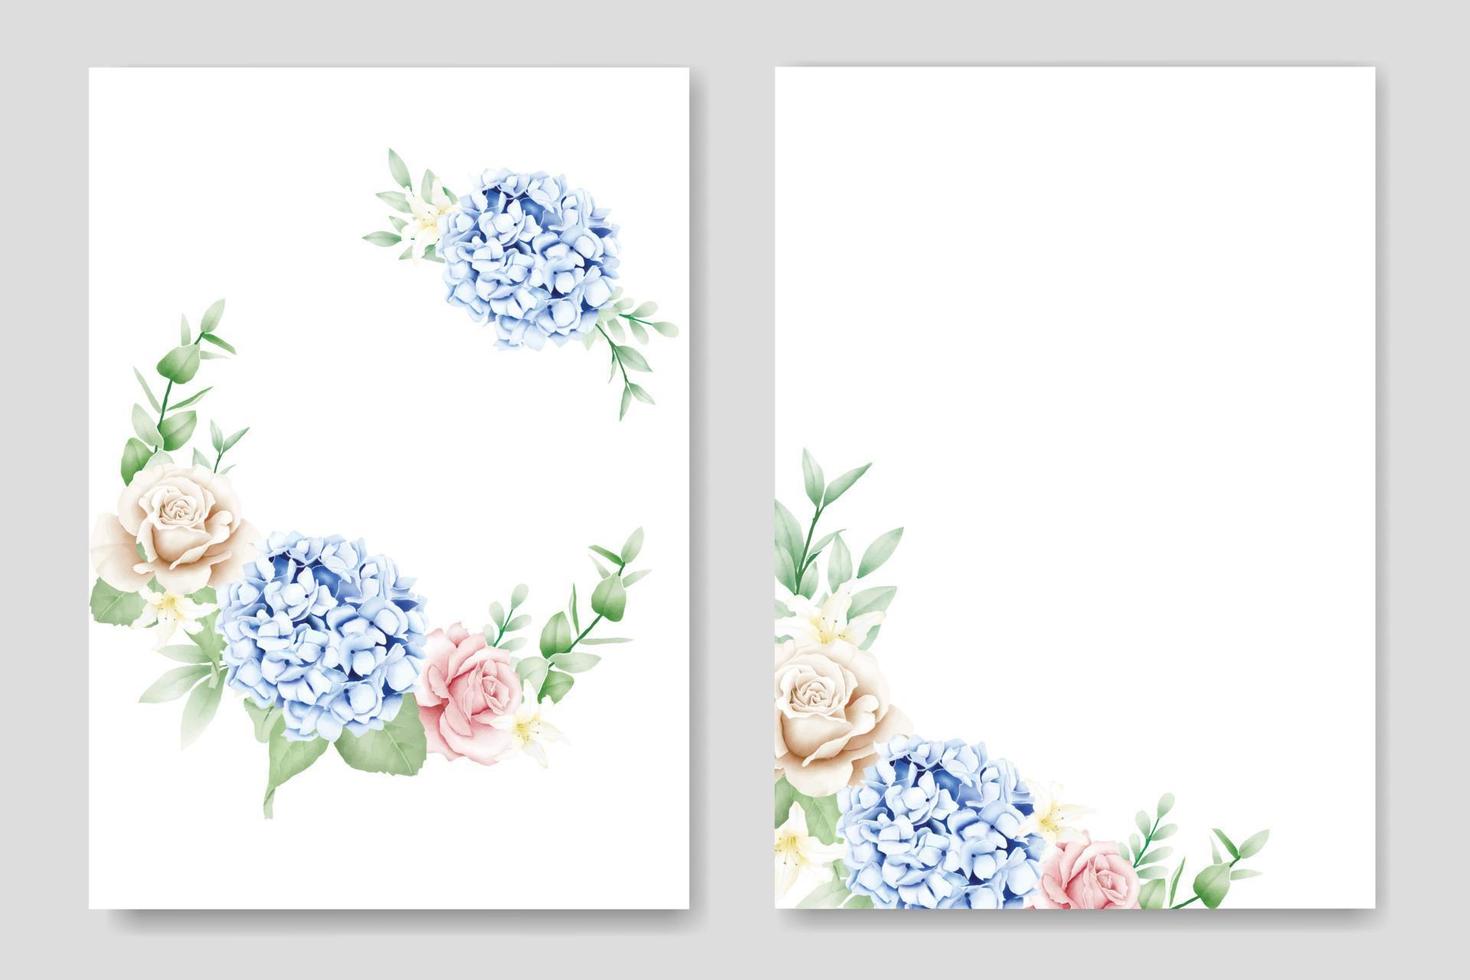 lindo cartão de convite de casamento floral de hortênsia vetor